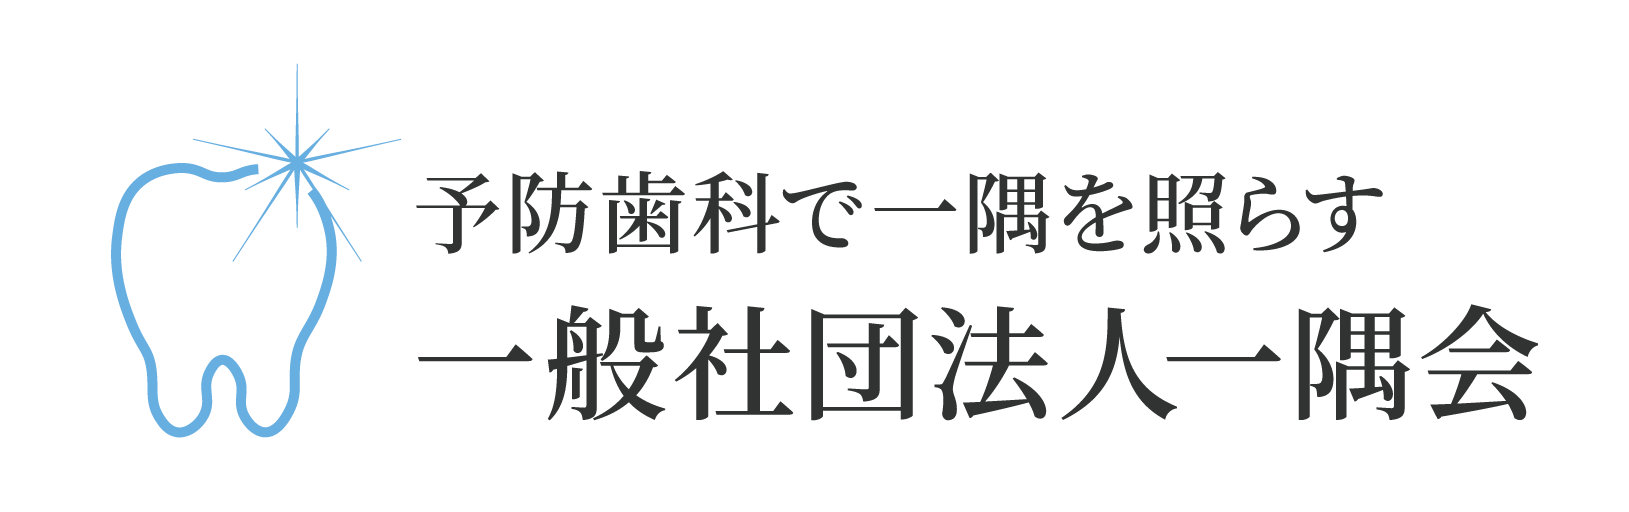 ichigukai-logo